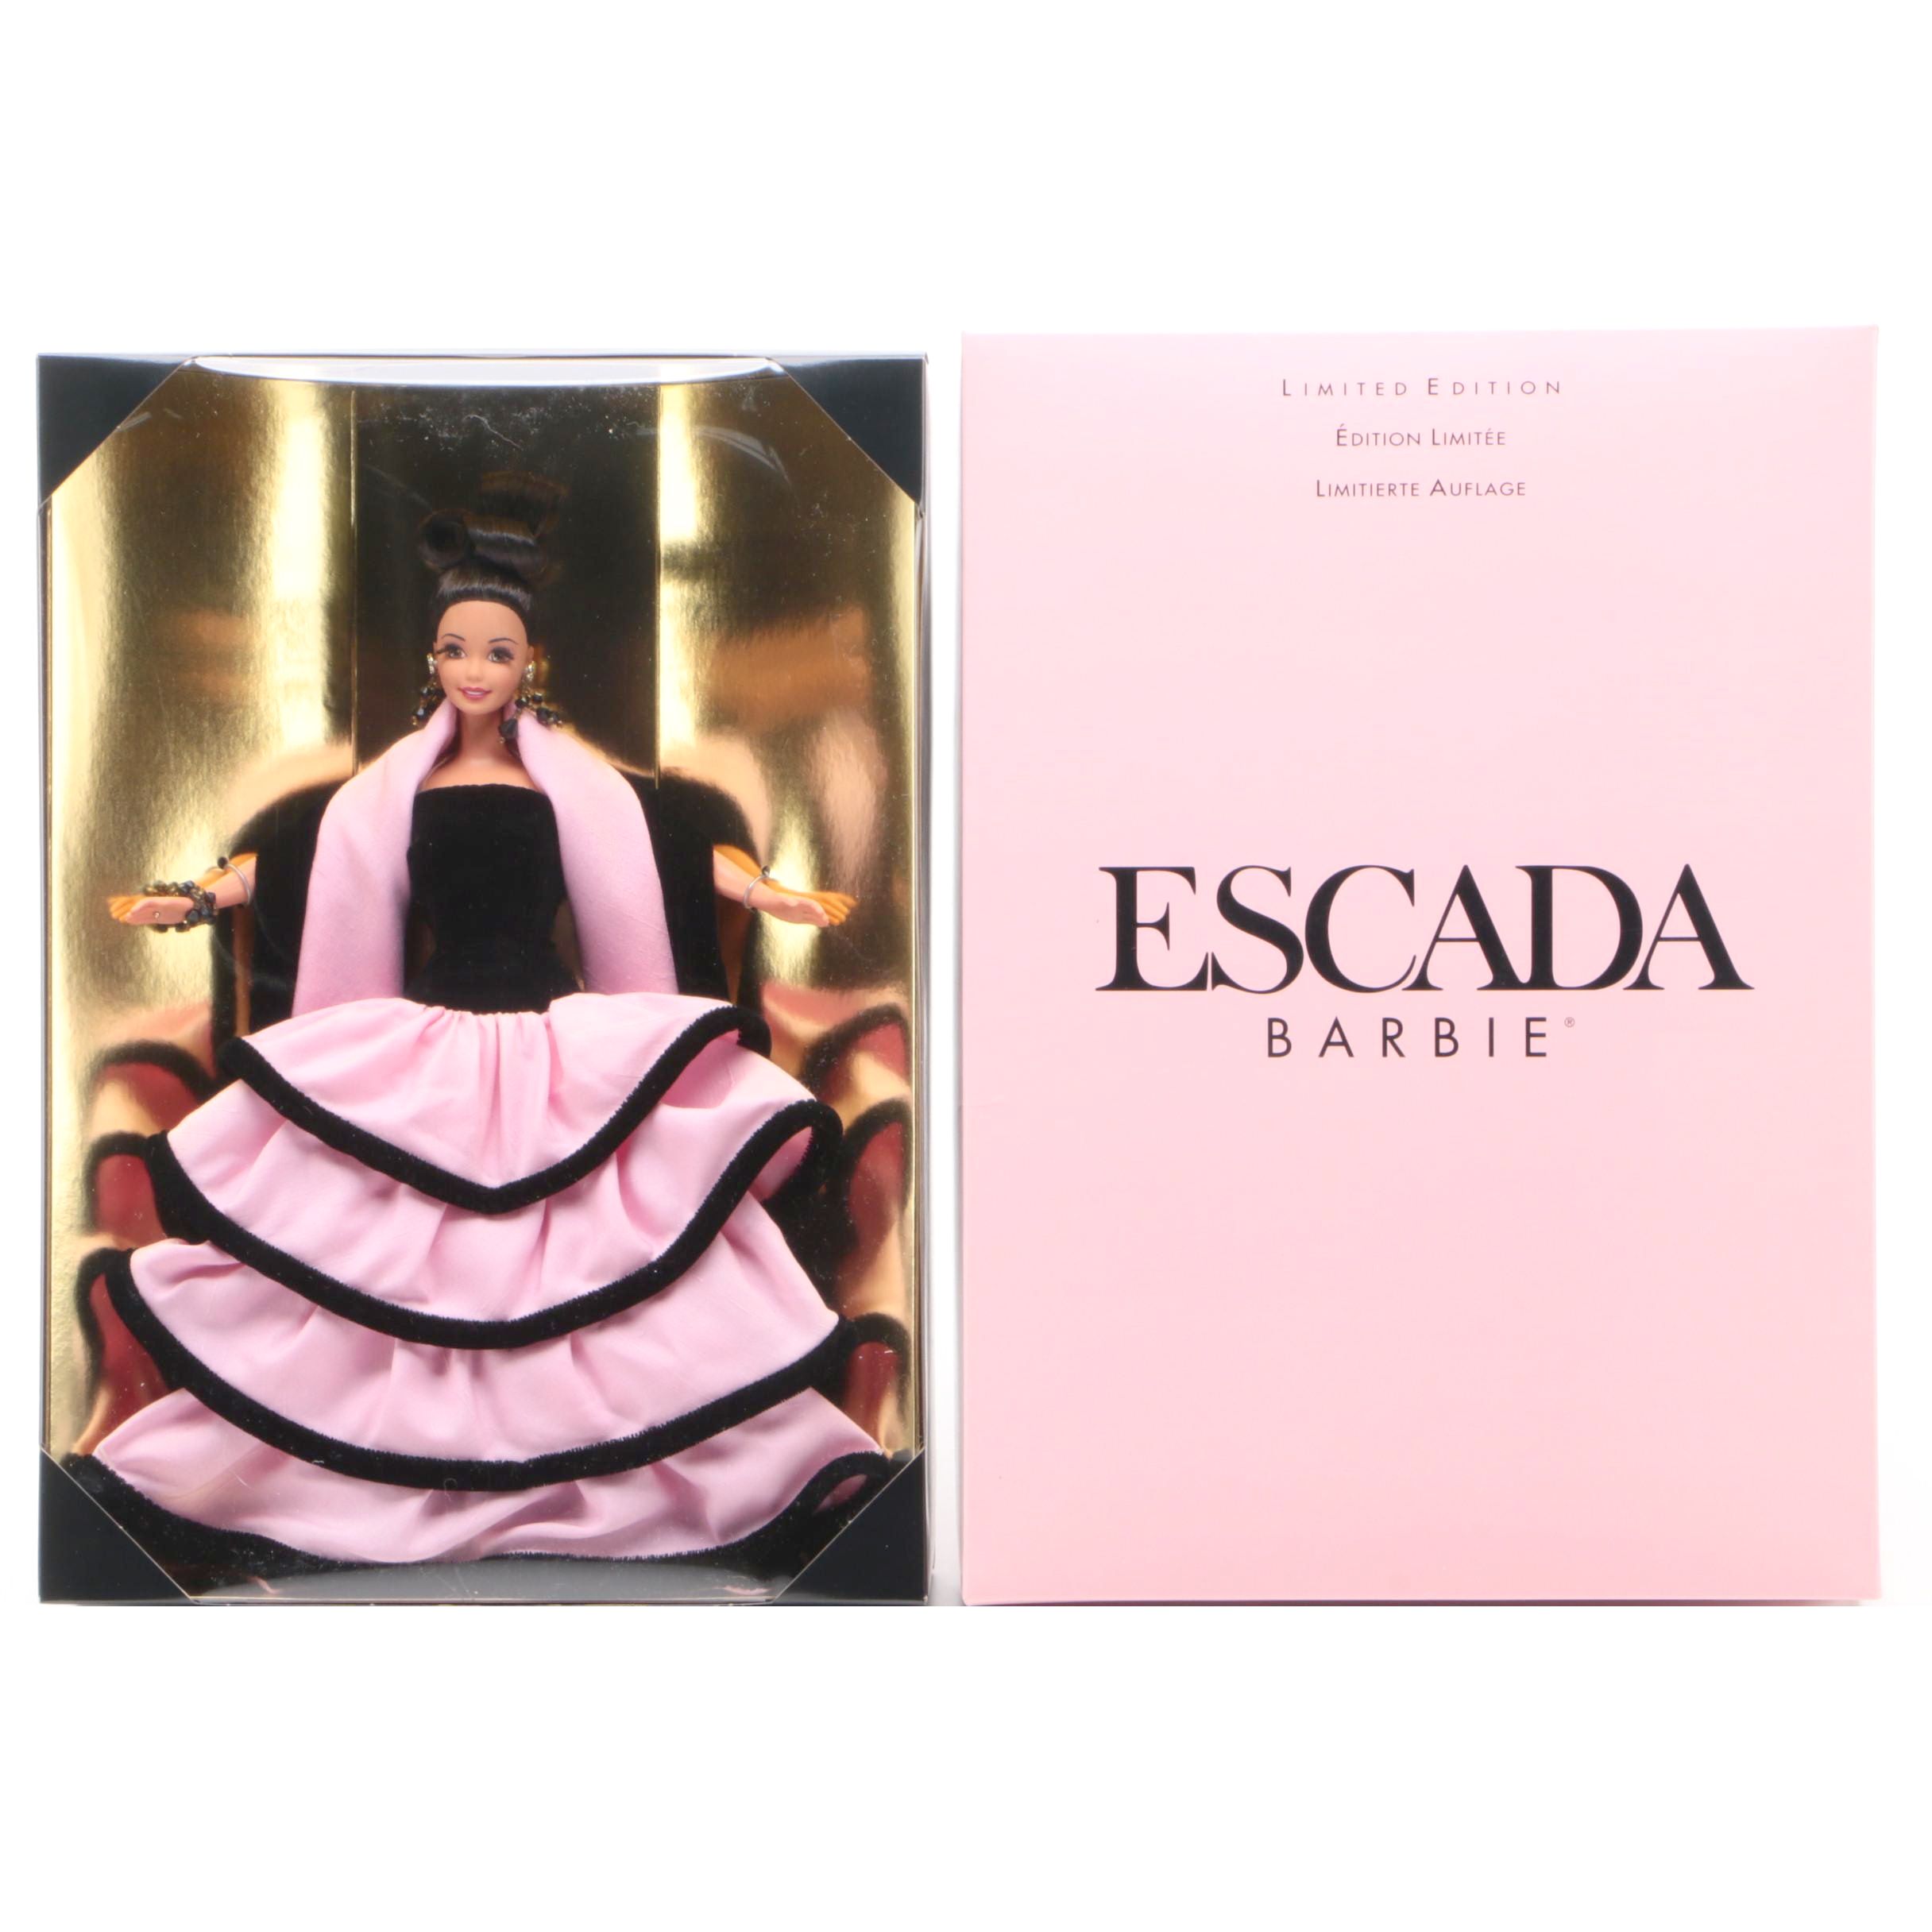 escada barbie limited edition